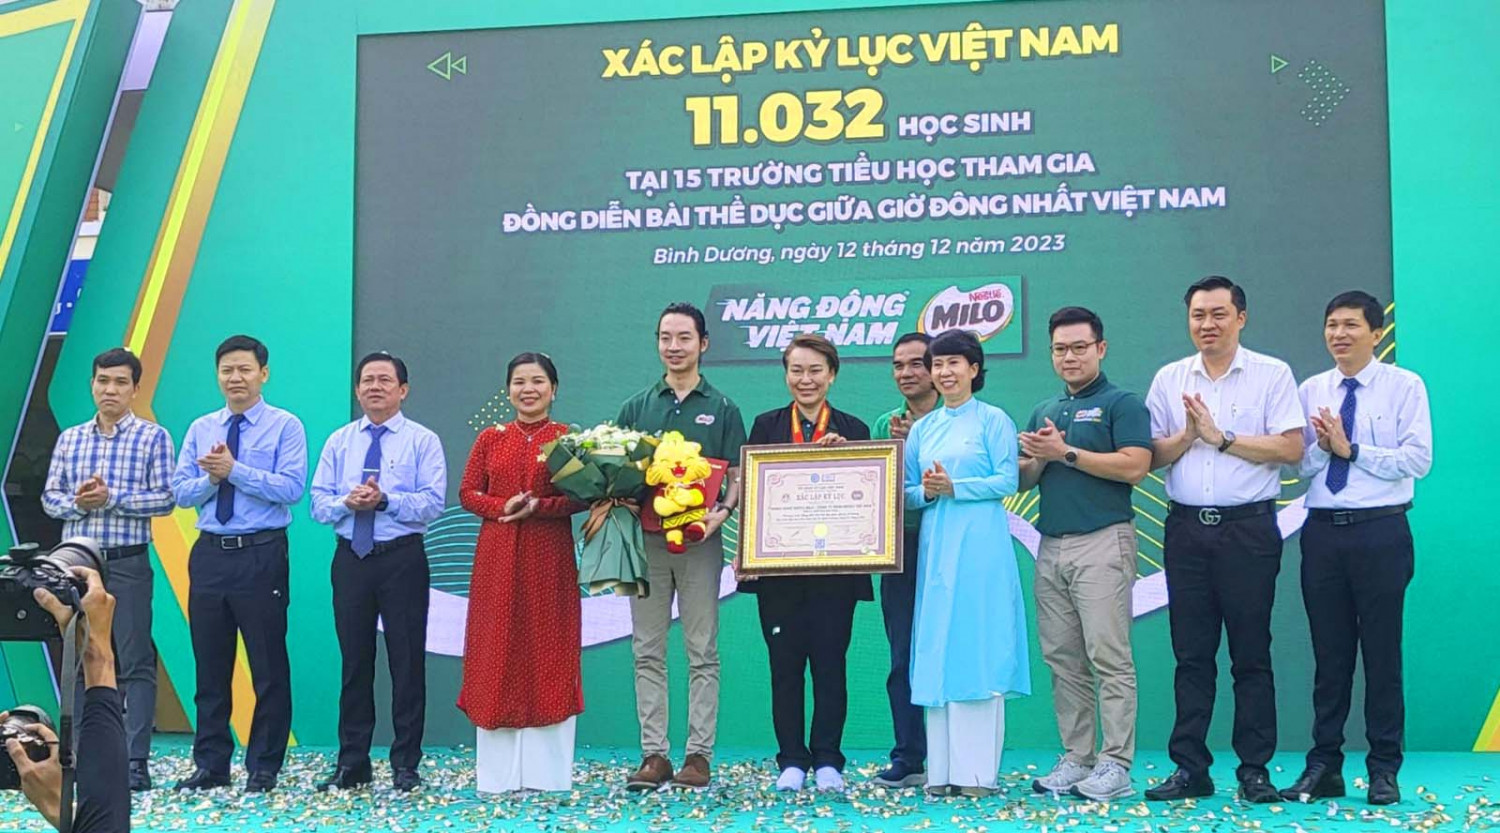 11.032 học sinh tiểu học Bình Dương lập kỷ lục Việt Nam với bài đồng diễn thể dục giữa giờ